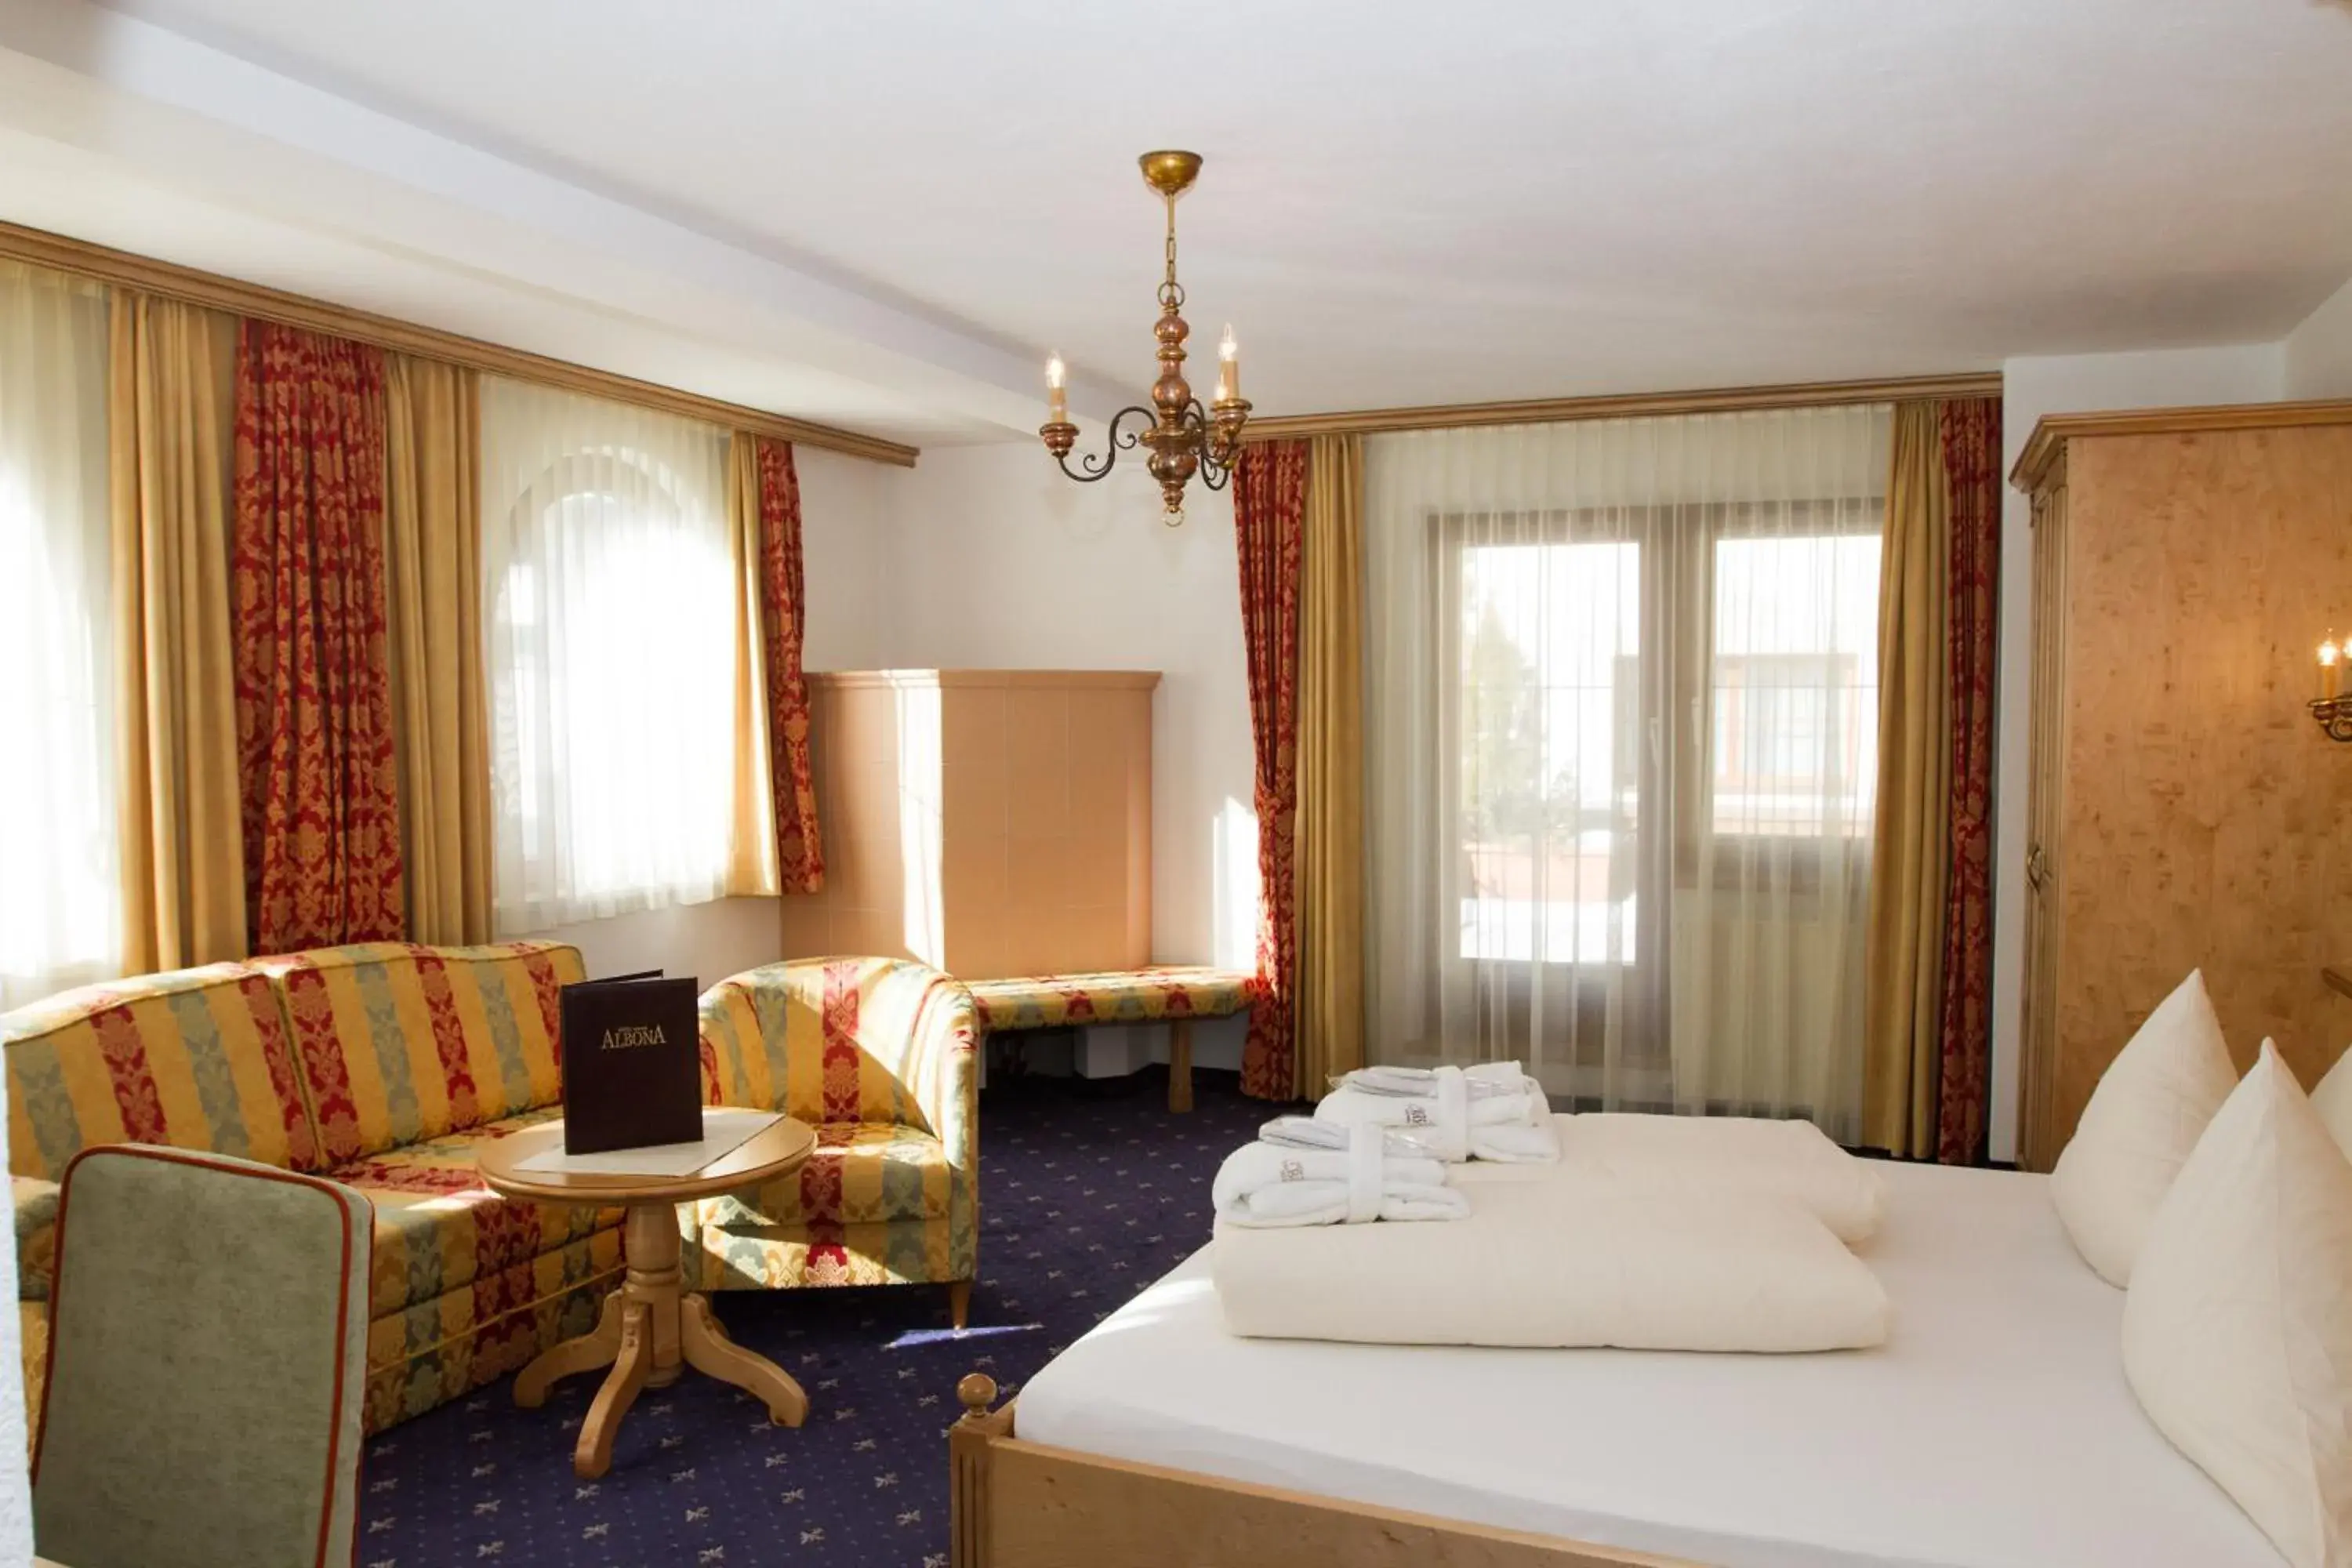 Bedroom in Hotel Albona